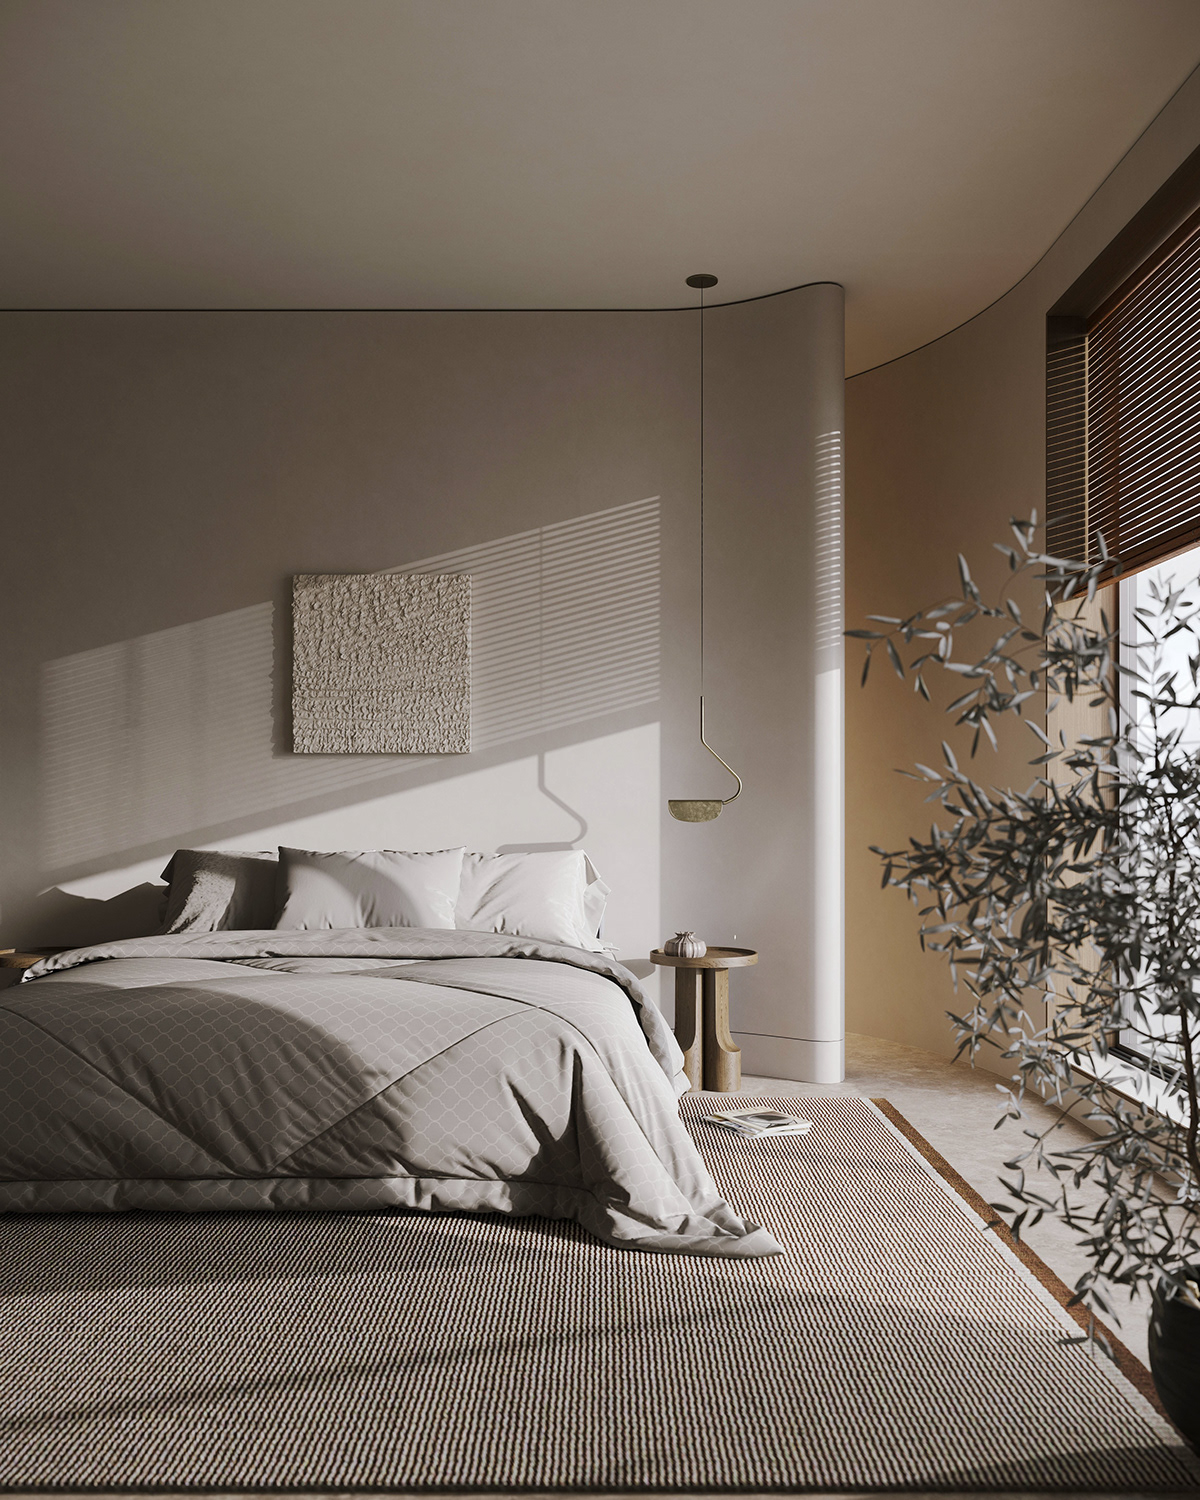 bedroom, bed, indoor plant
wall art